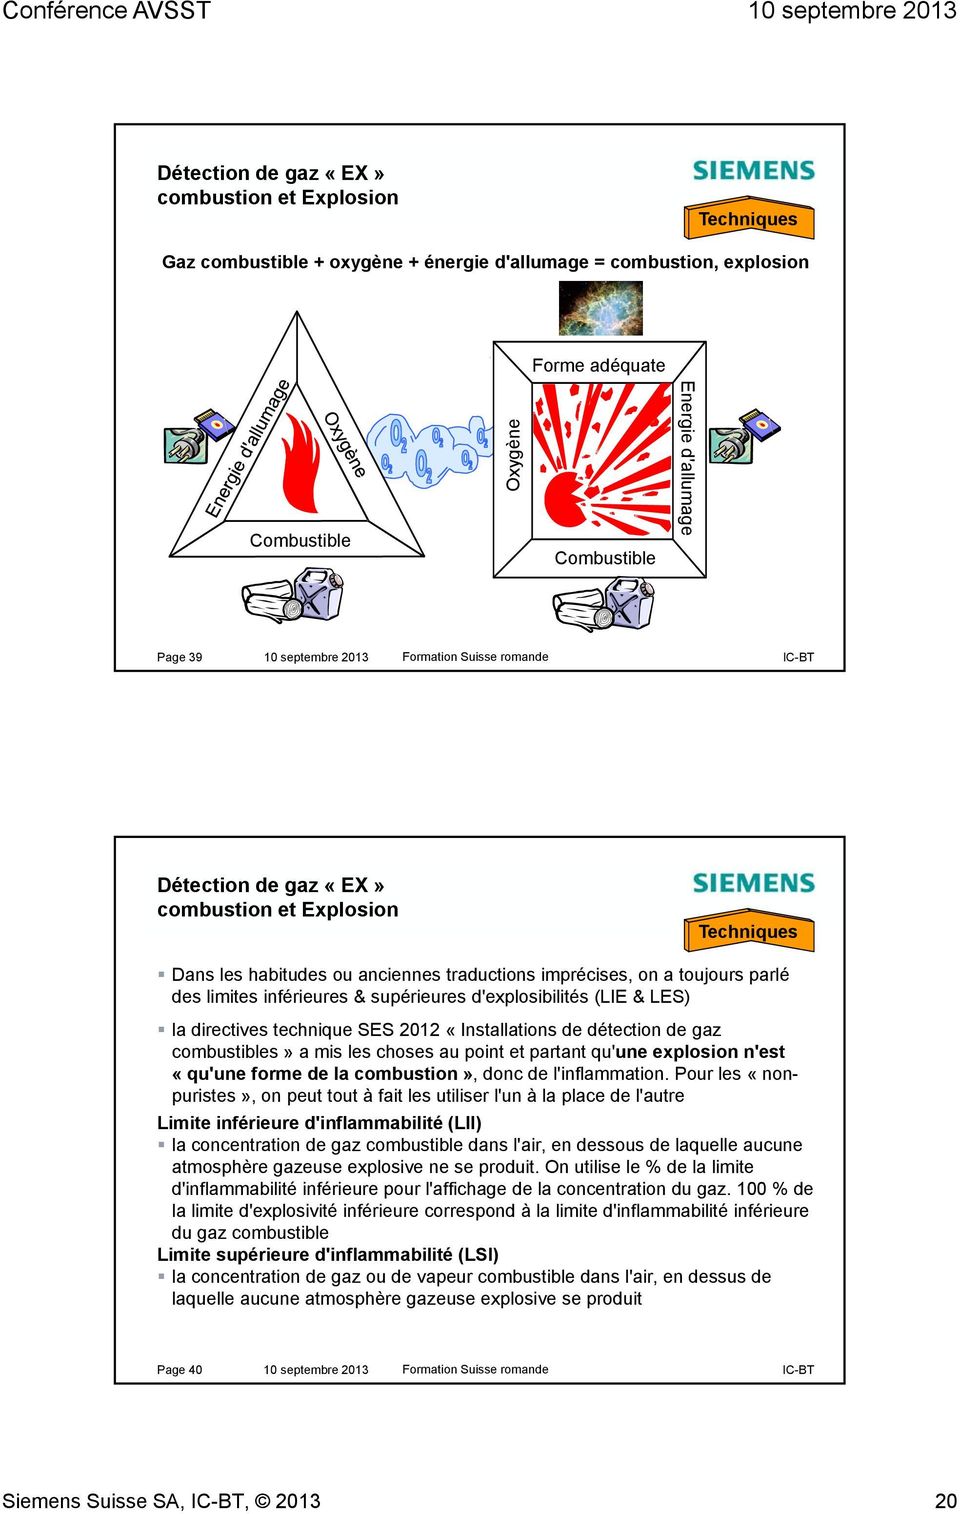 d'explosibilités (LIE & LES) la directives technique SES 2012 «Installations de détection de gaz combustibles» a mis les choses au point et partant qu'une explosion n'est «qu'une forme de la